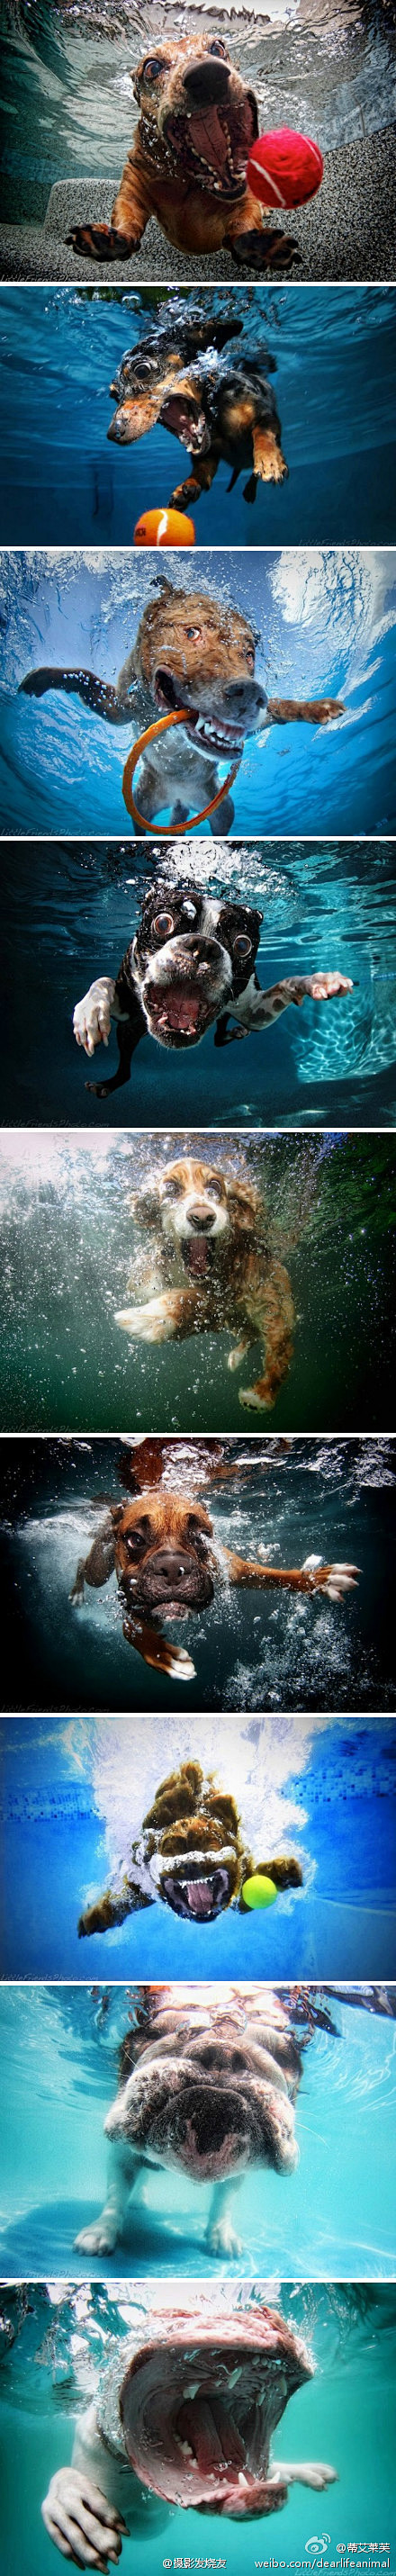 宠物摄影师赛斯卡斯蒂尔 的“水面下的狗狗...